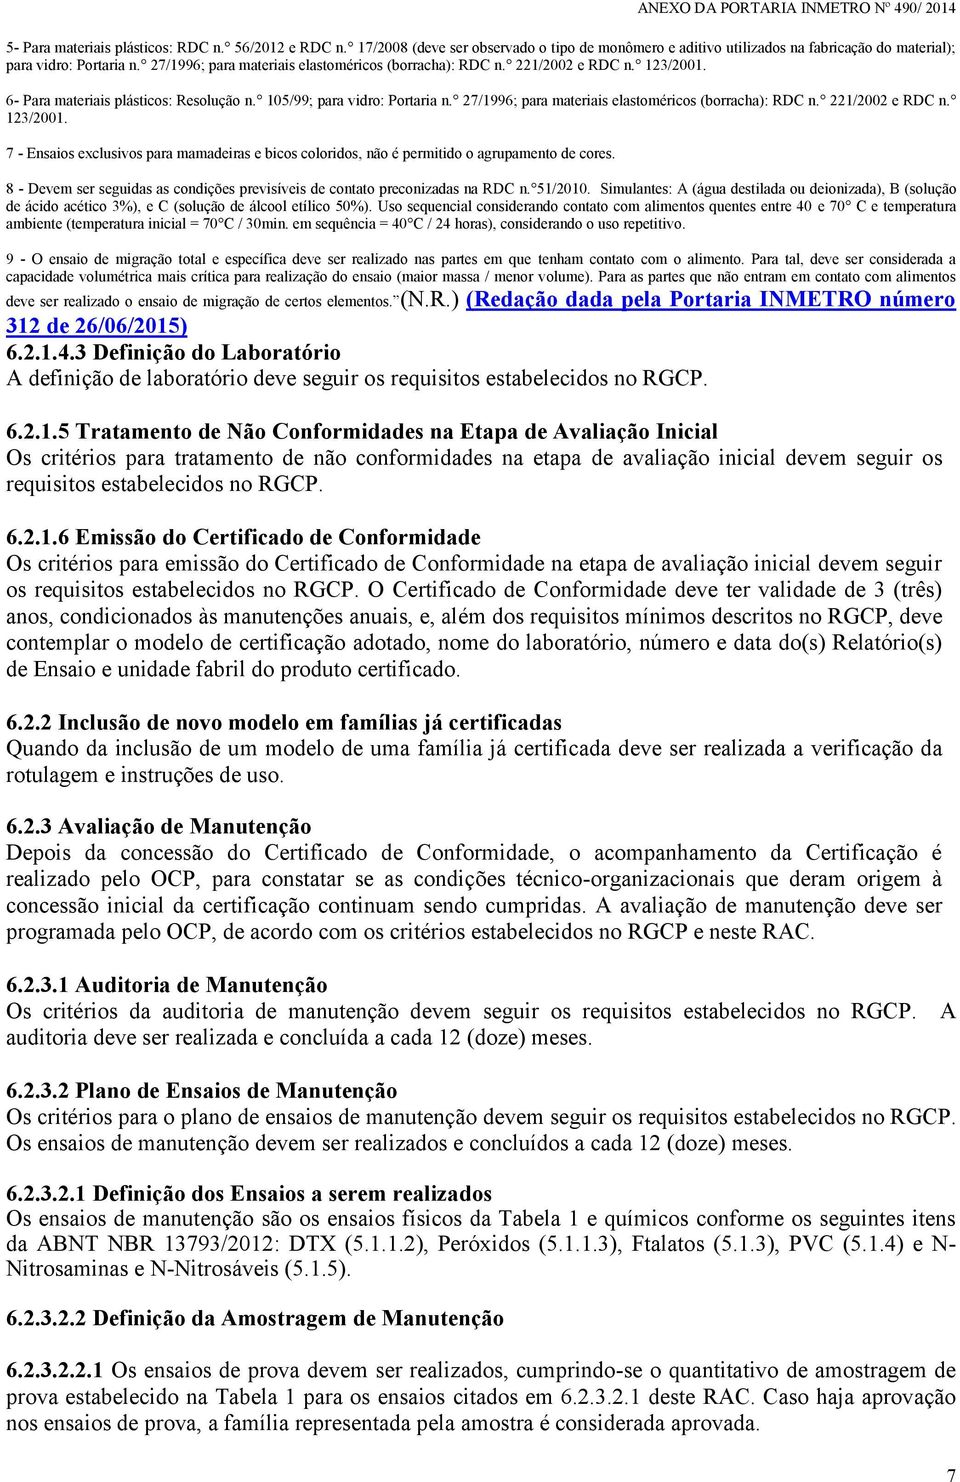 27/1996; para materiais elastoméricos (borracha): RDC n. 221/2002 e RDC n. 123/2001. 7 - Ensaios exclusivos para mamadeiras e bicos coloridos, não é permitido o agrupamento de cores.